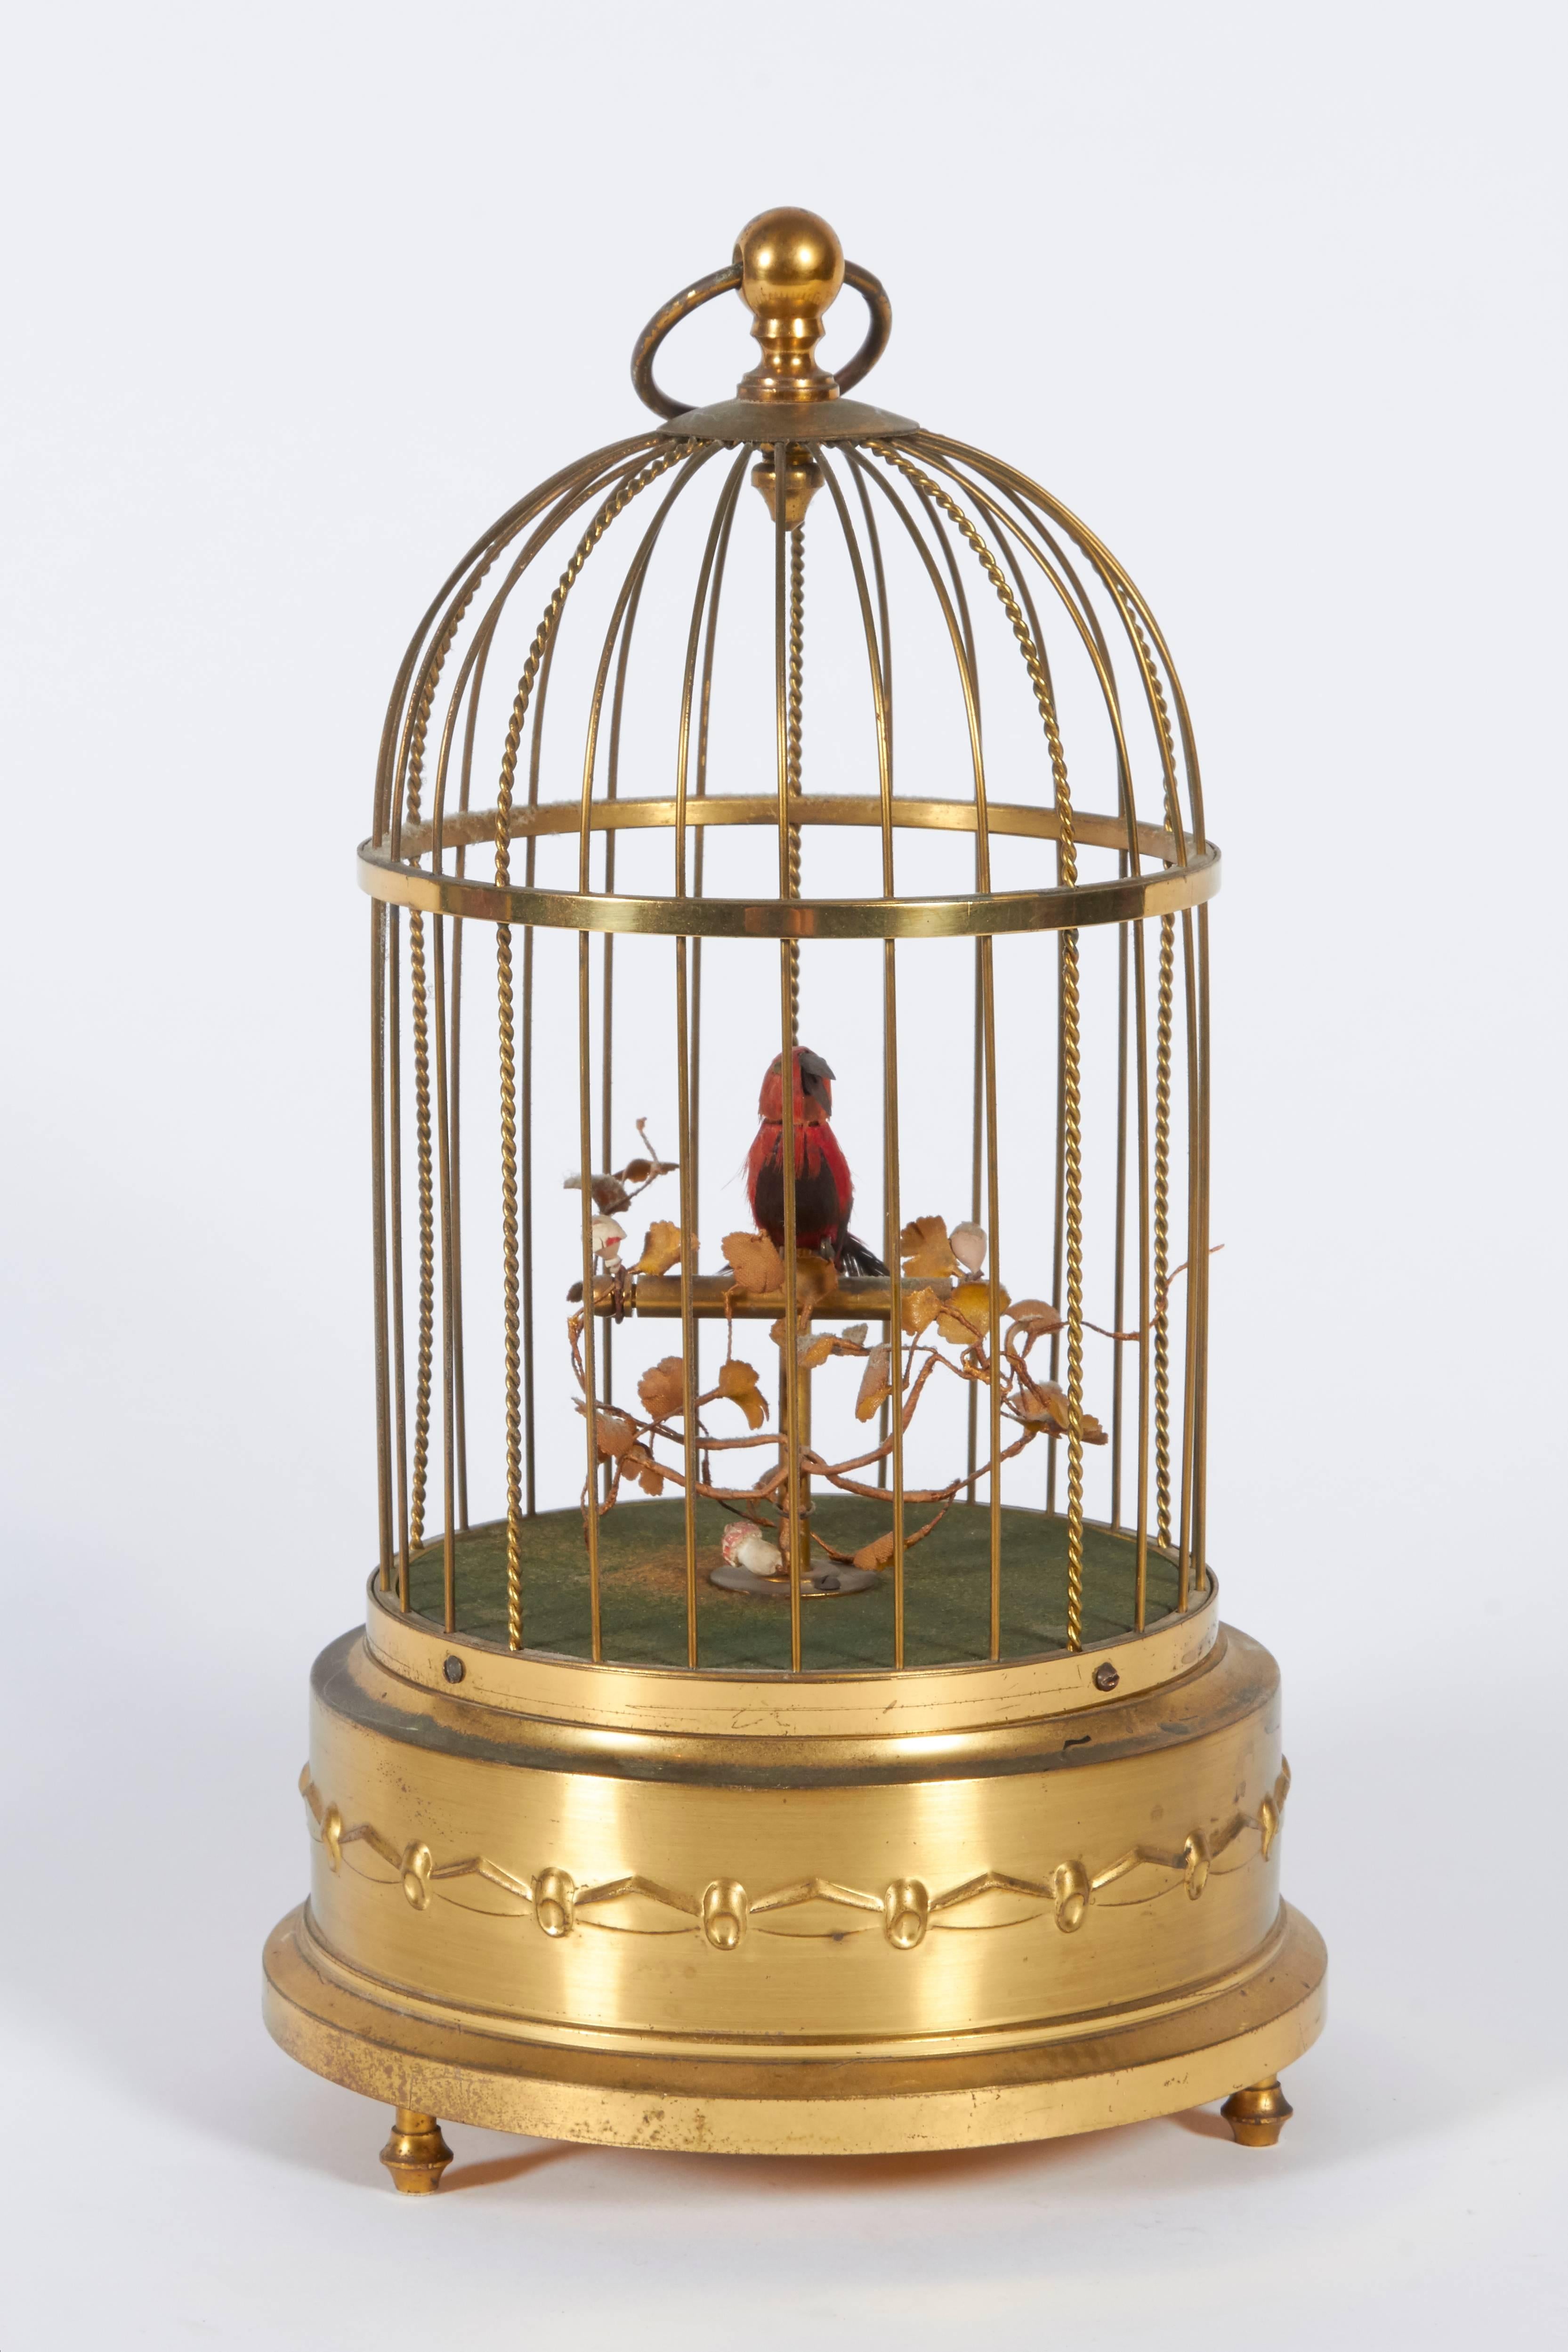 karl griesbaum singing bird cage